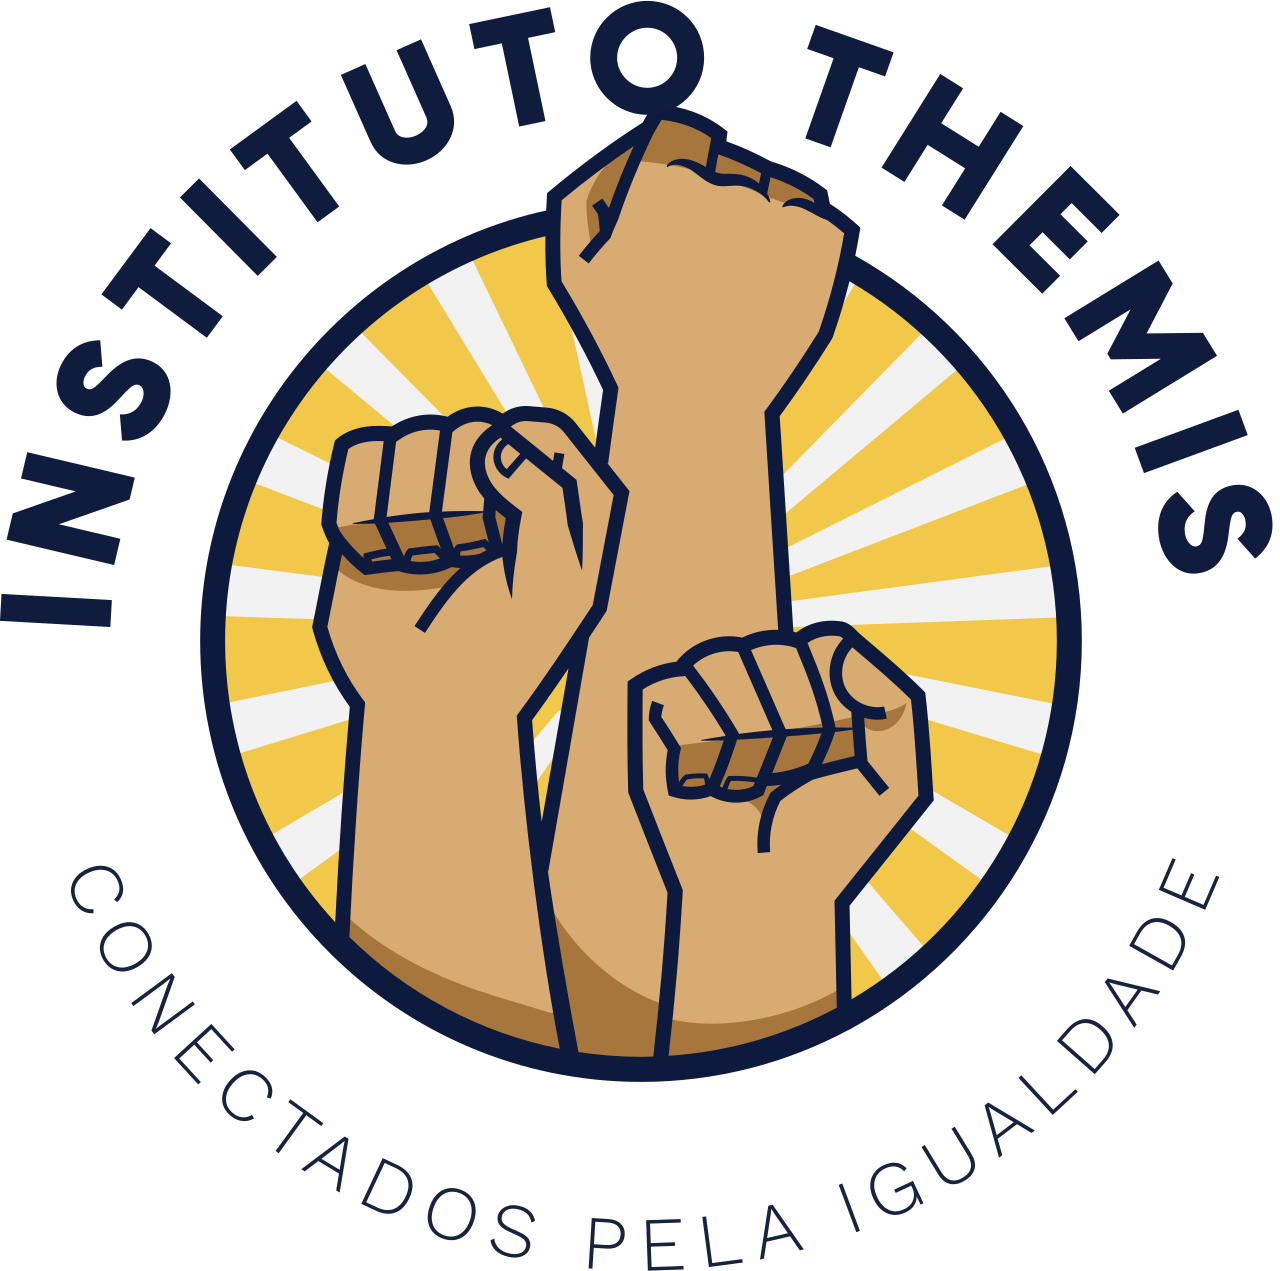 Instituto Themis 's logo